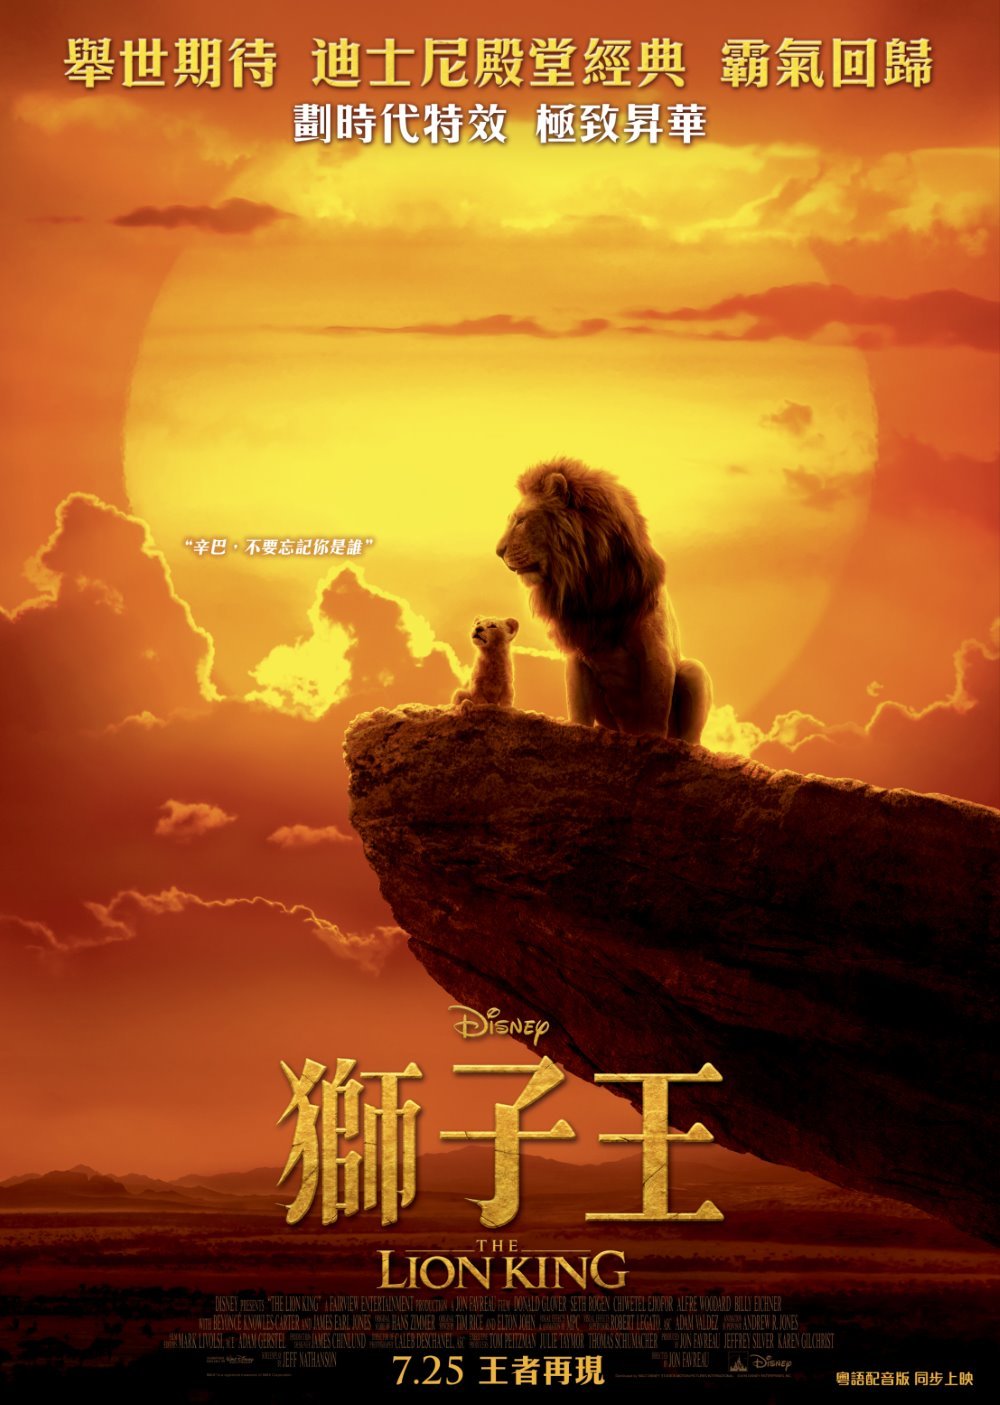 狮子王 / 狮子王真人版【原盘DIY台配国语/粤语 简繁/双语特效字幕】“修复蓝光机黑屏问题” The Lion King 2019 1080p V2 Blu-ray AVC DTS-HD MA 7.1-Thor@HDSky[42.52 GB]-4.jpg